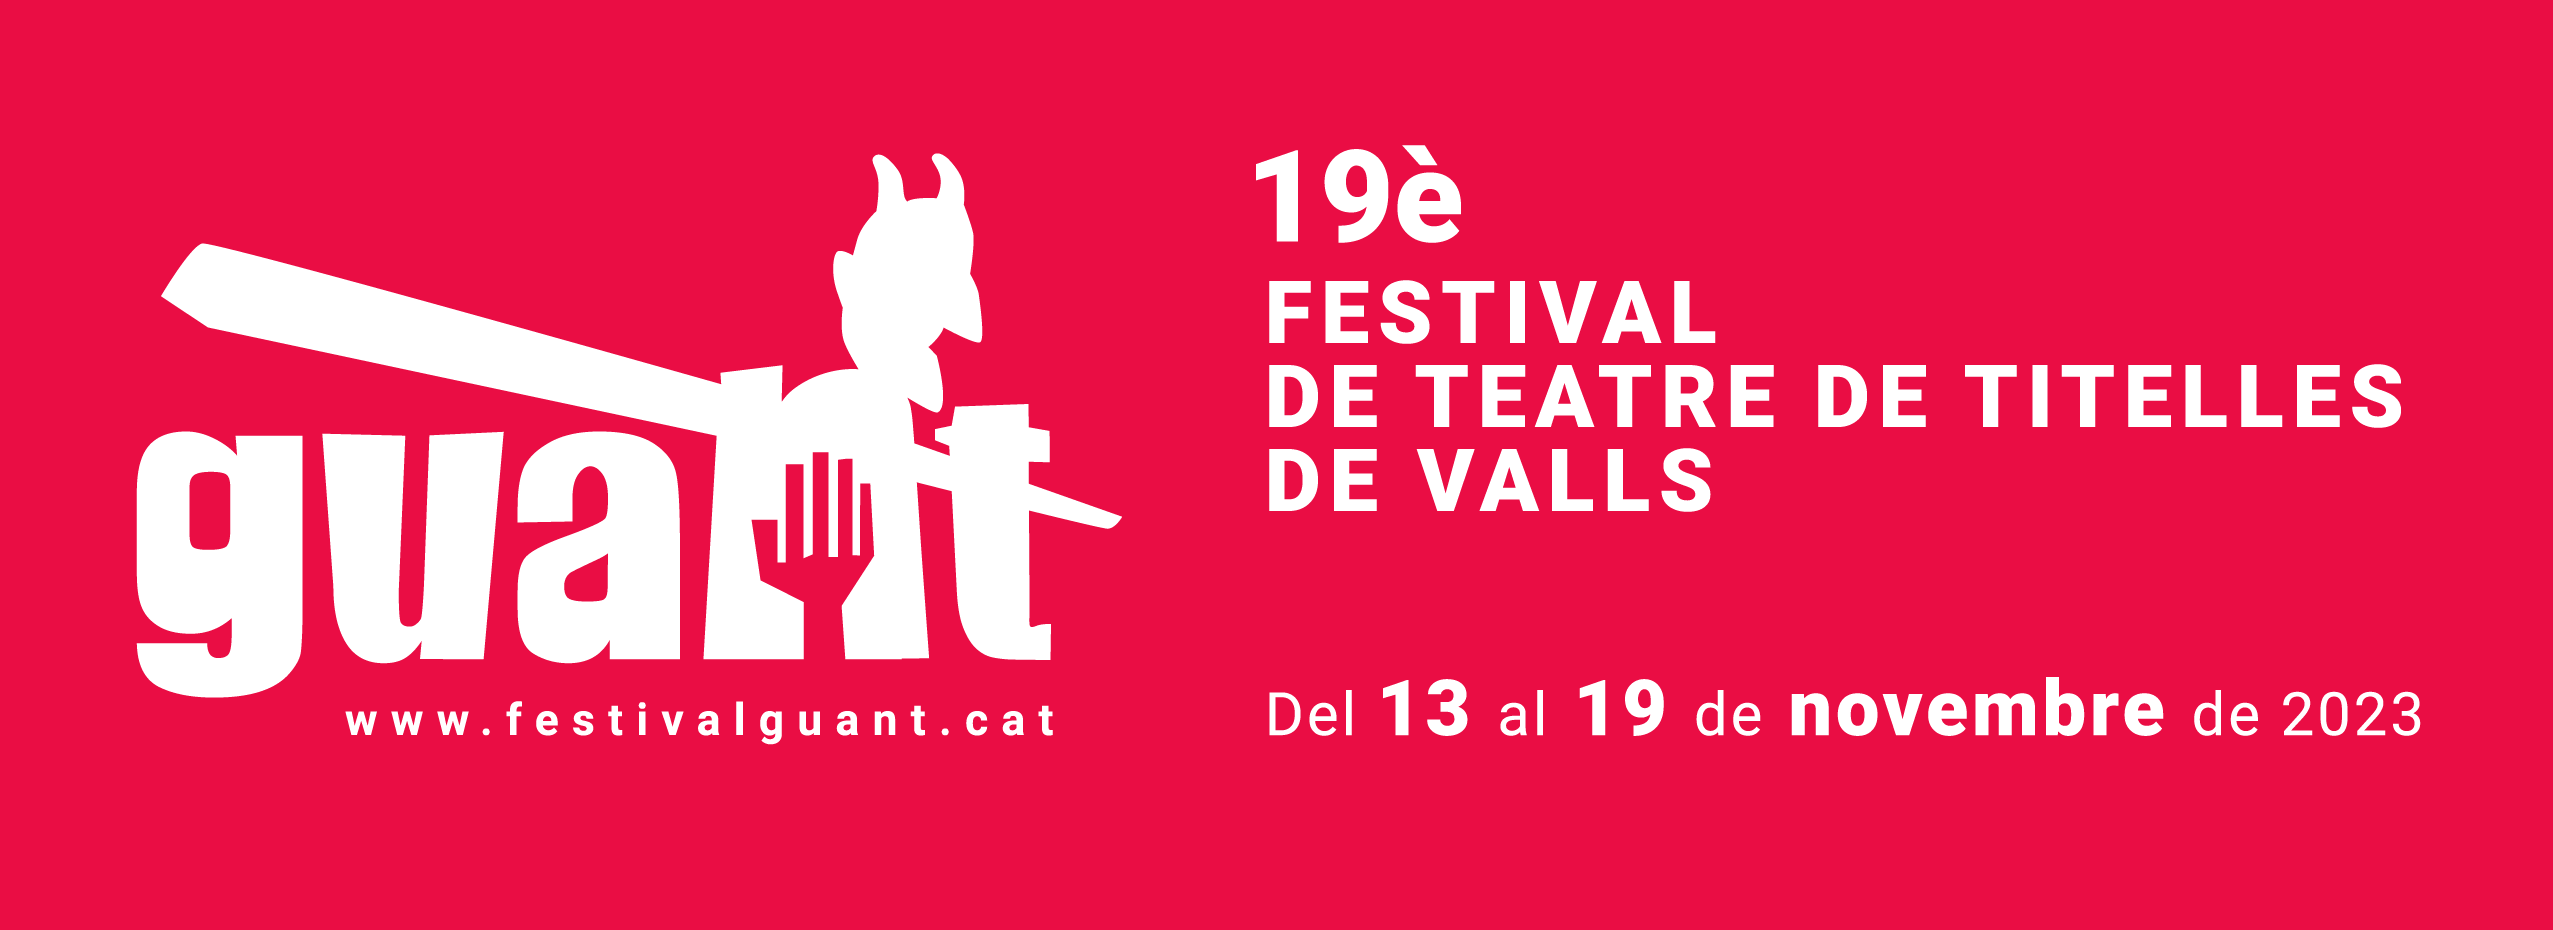 19è Festival internacional de teatre de titelles de Valls | La Festa d’Aniversari